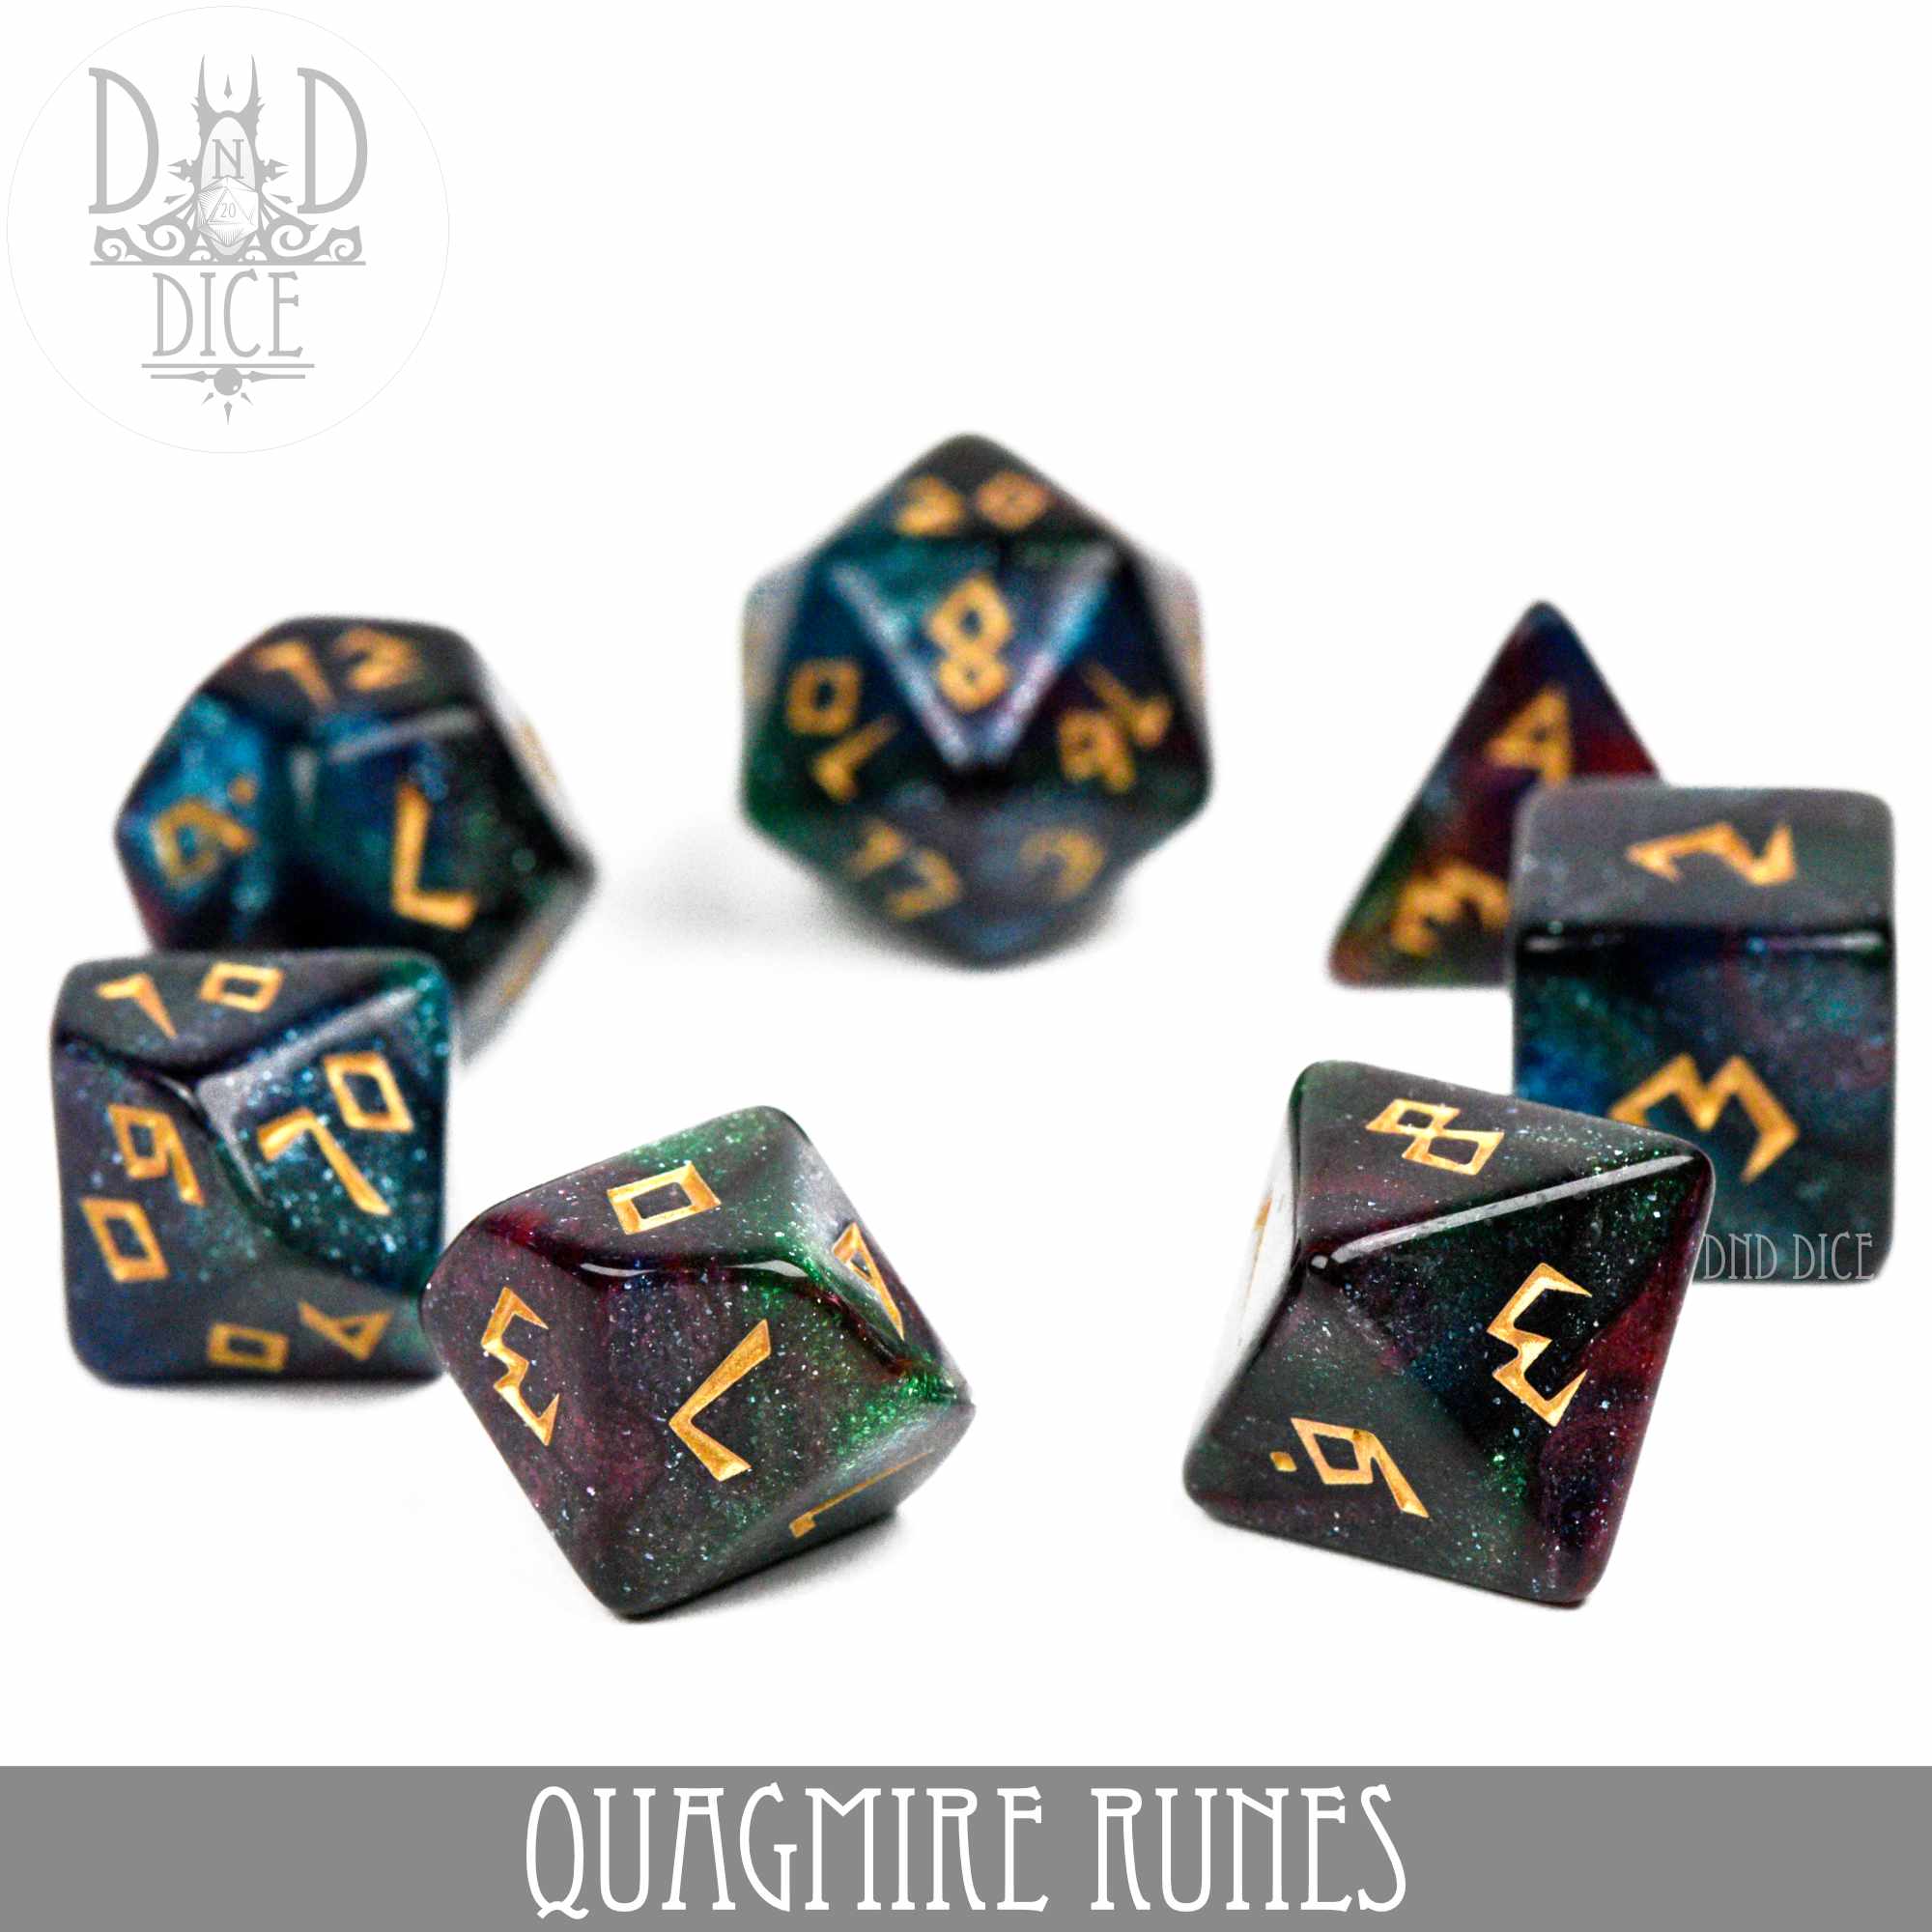 Quagmire Runes Dice Set